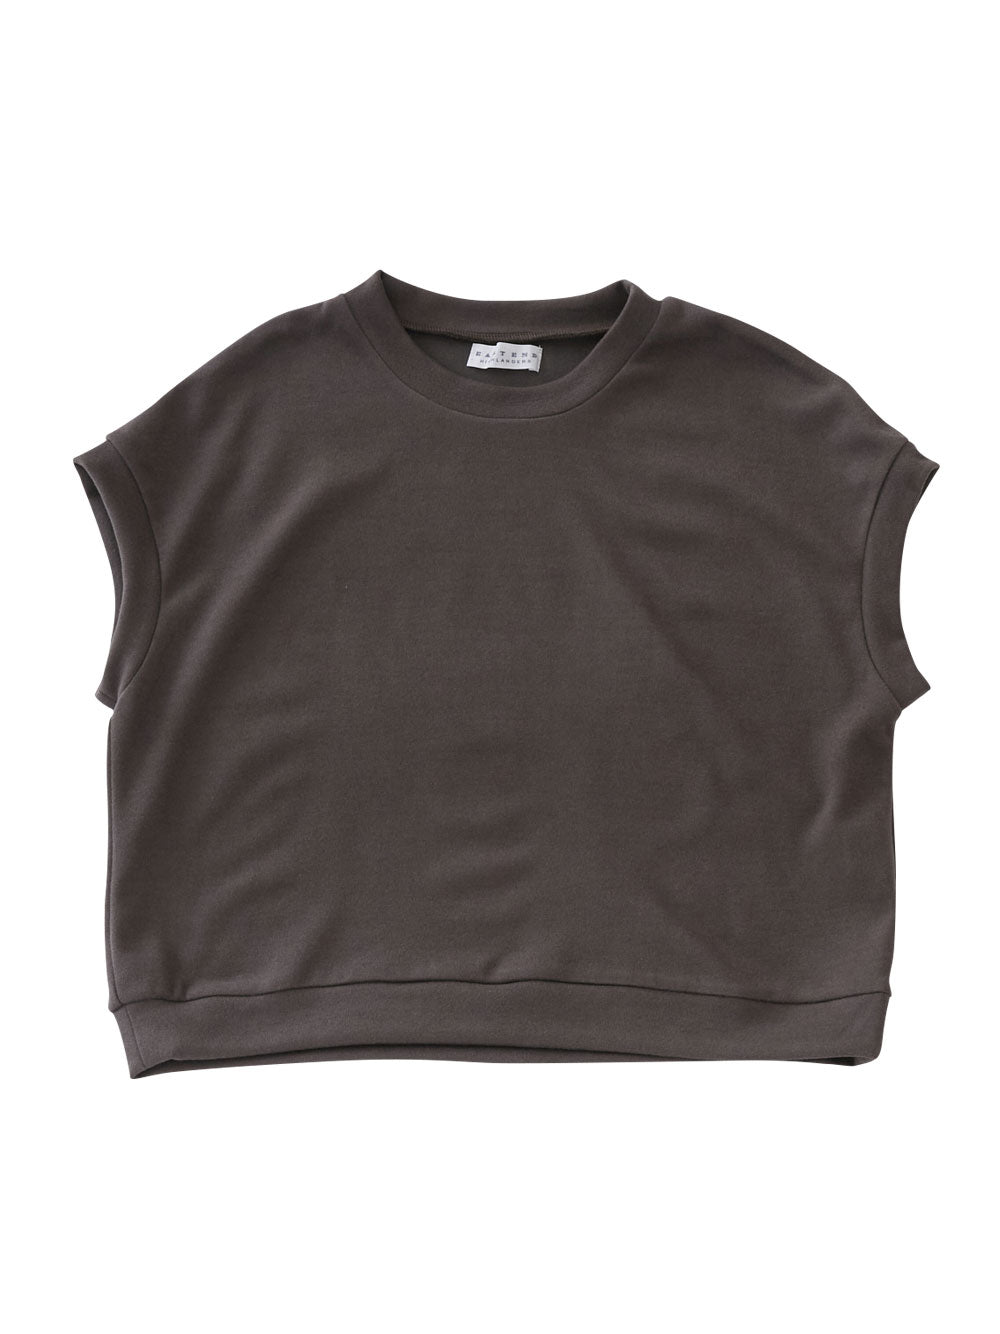 Brown Jersey Sweatshirt